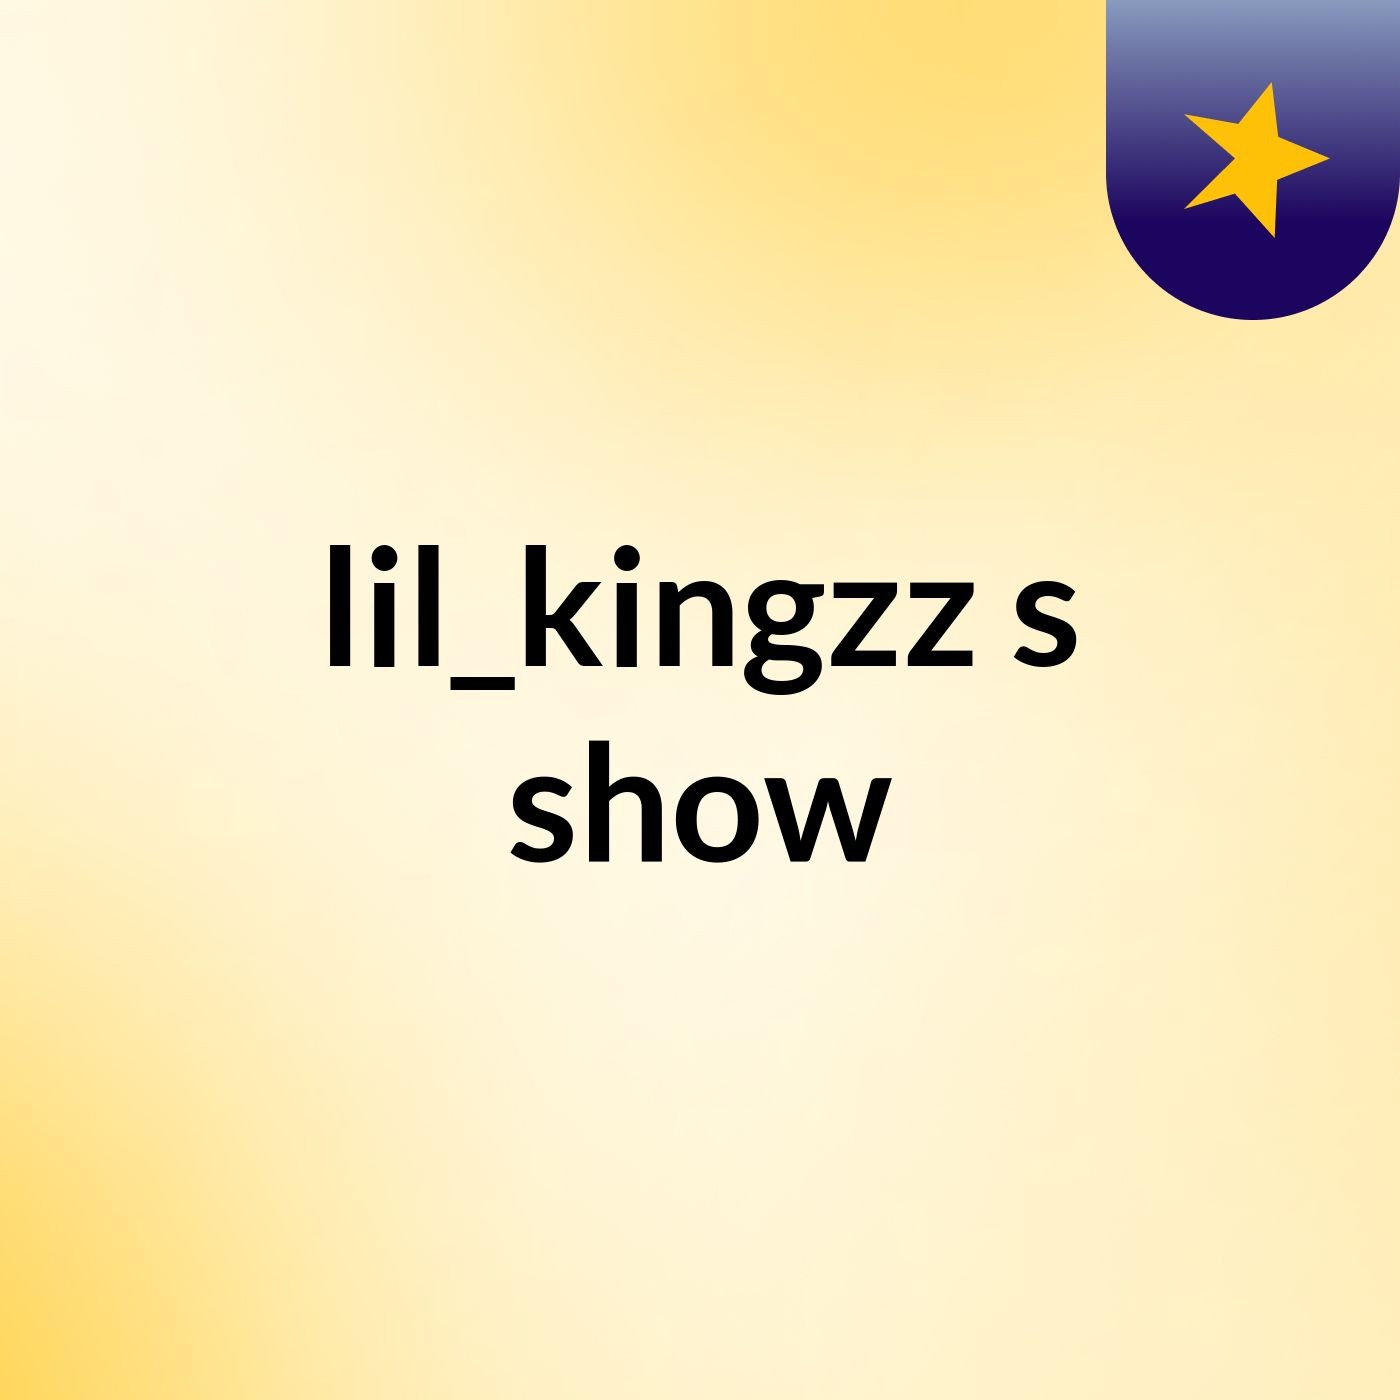 lil_kingzz's show